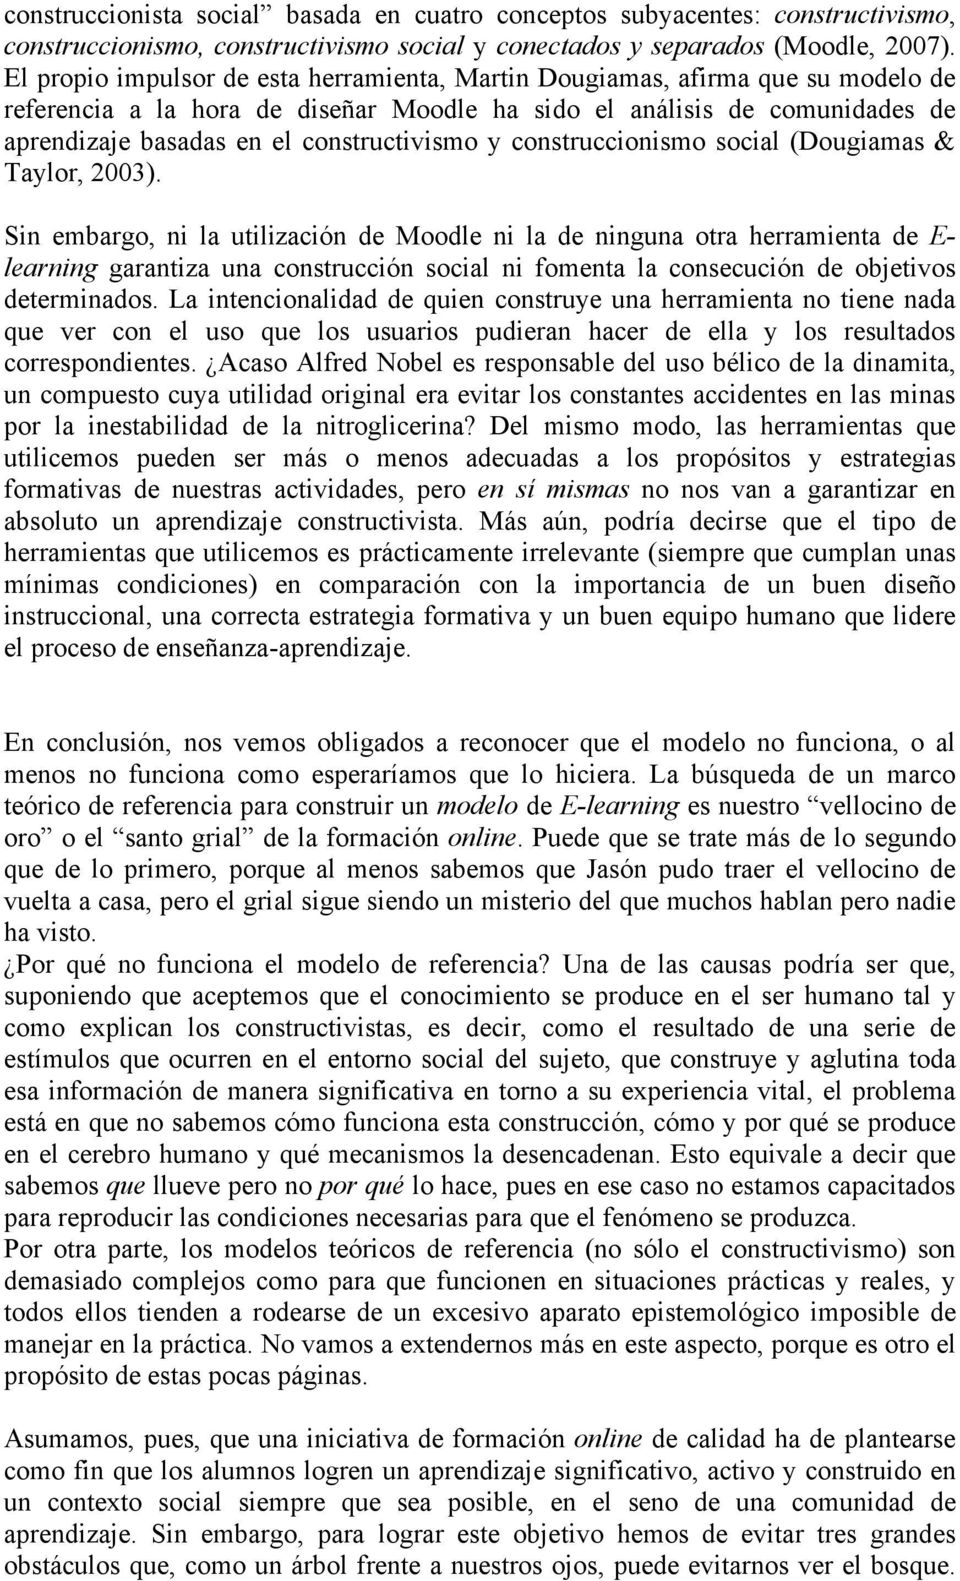 constructivismo y construccionismo social (Dougiamas & Taylor, 2003).